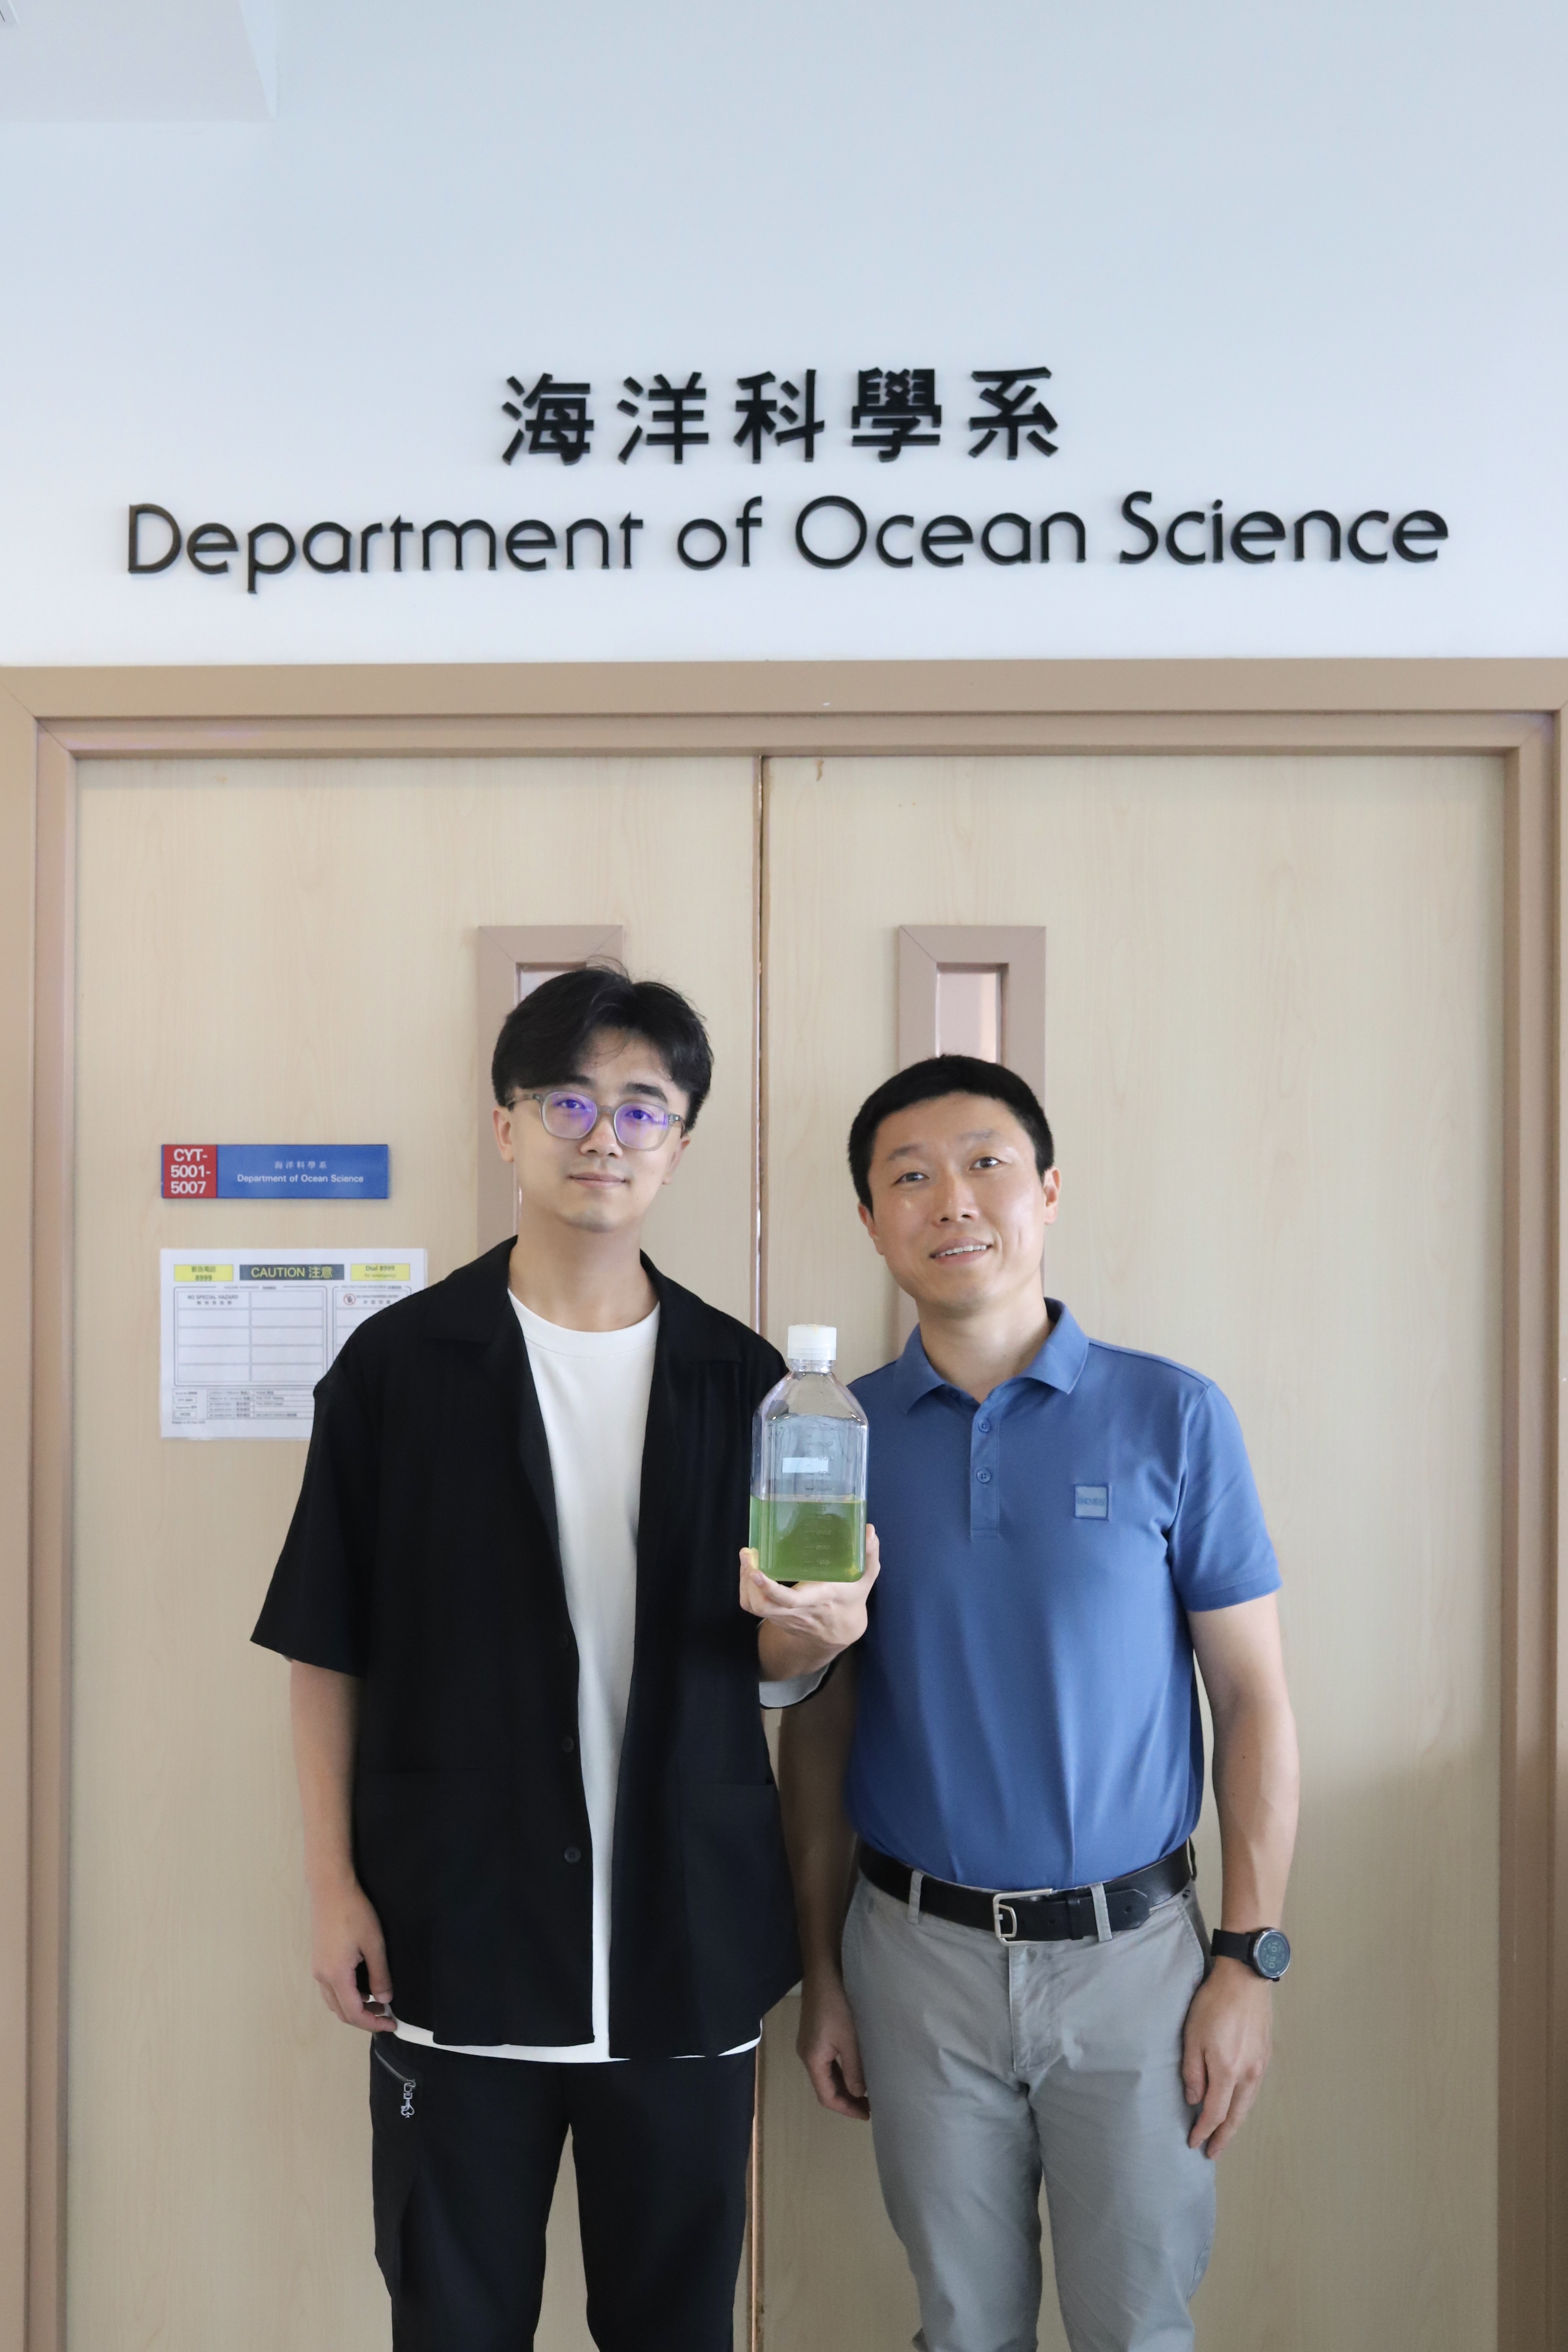 曾慶璐教授（右）及其中一位論文作者科大海洋科學系博士學生栗浩夫（左）展示原綠球藻樣本。